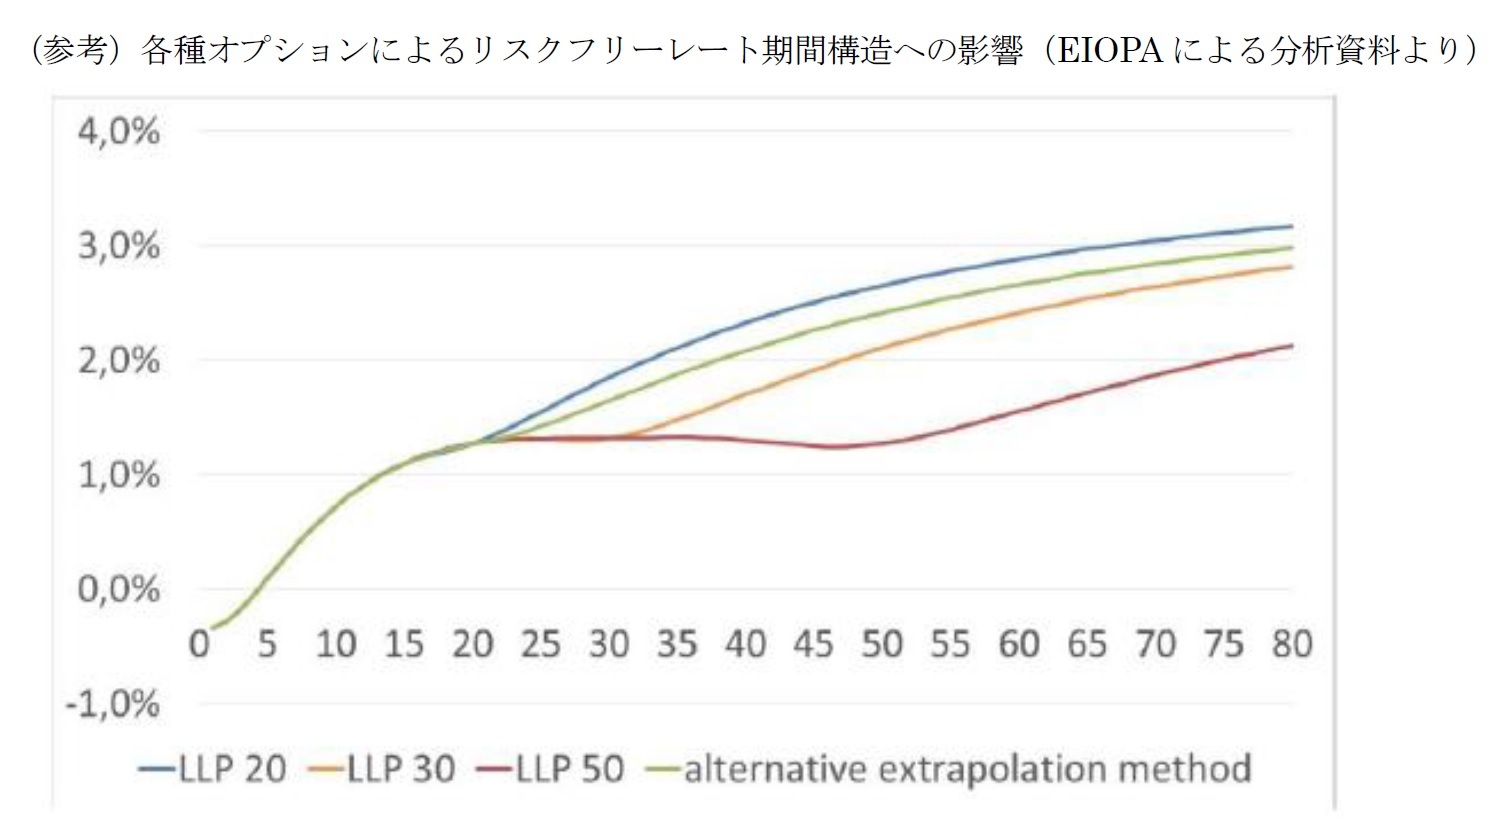 （参考）各種オプションによるリスクフリーレート期間構造への影響（EIOPAによる分析資料より）